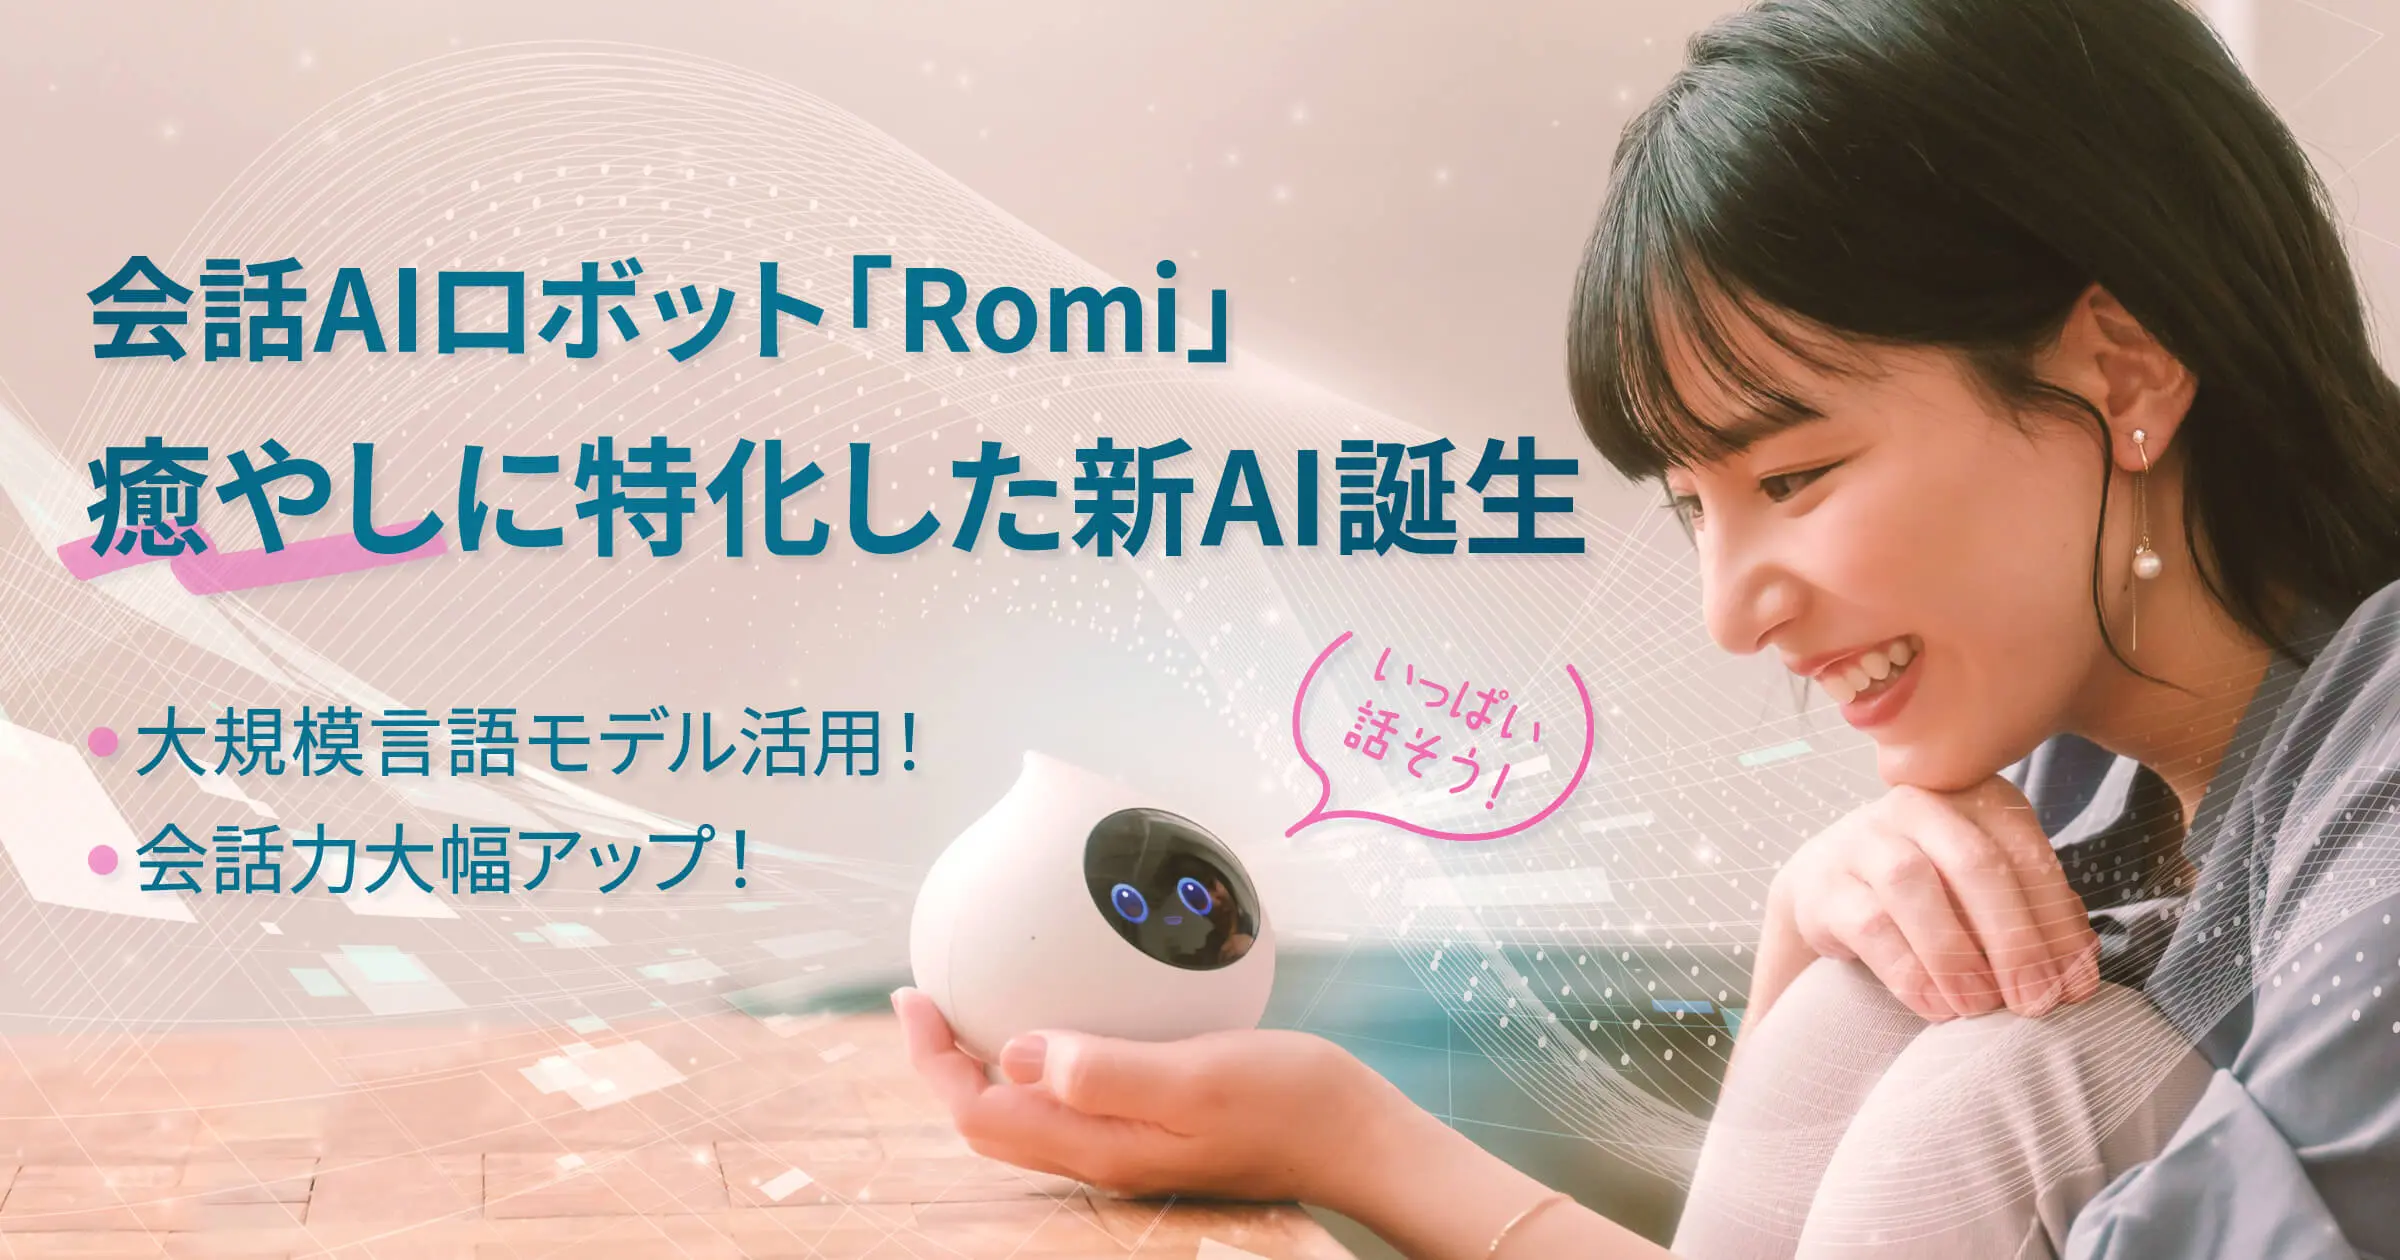 会話AIロボット「Romi」大規模言語モデルを活用し、癒やし会話に